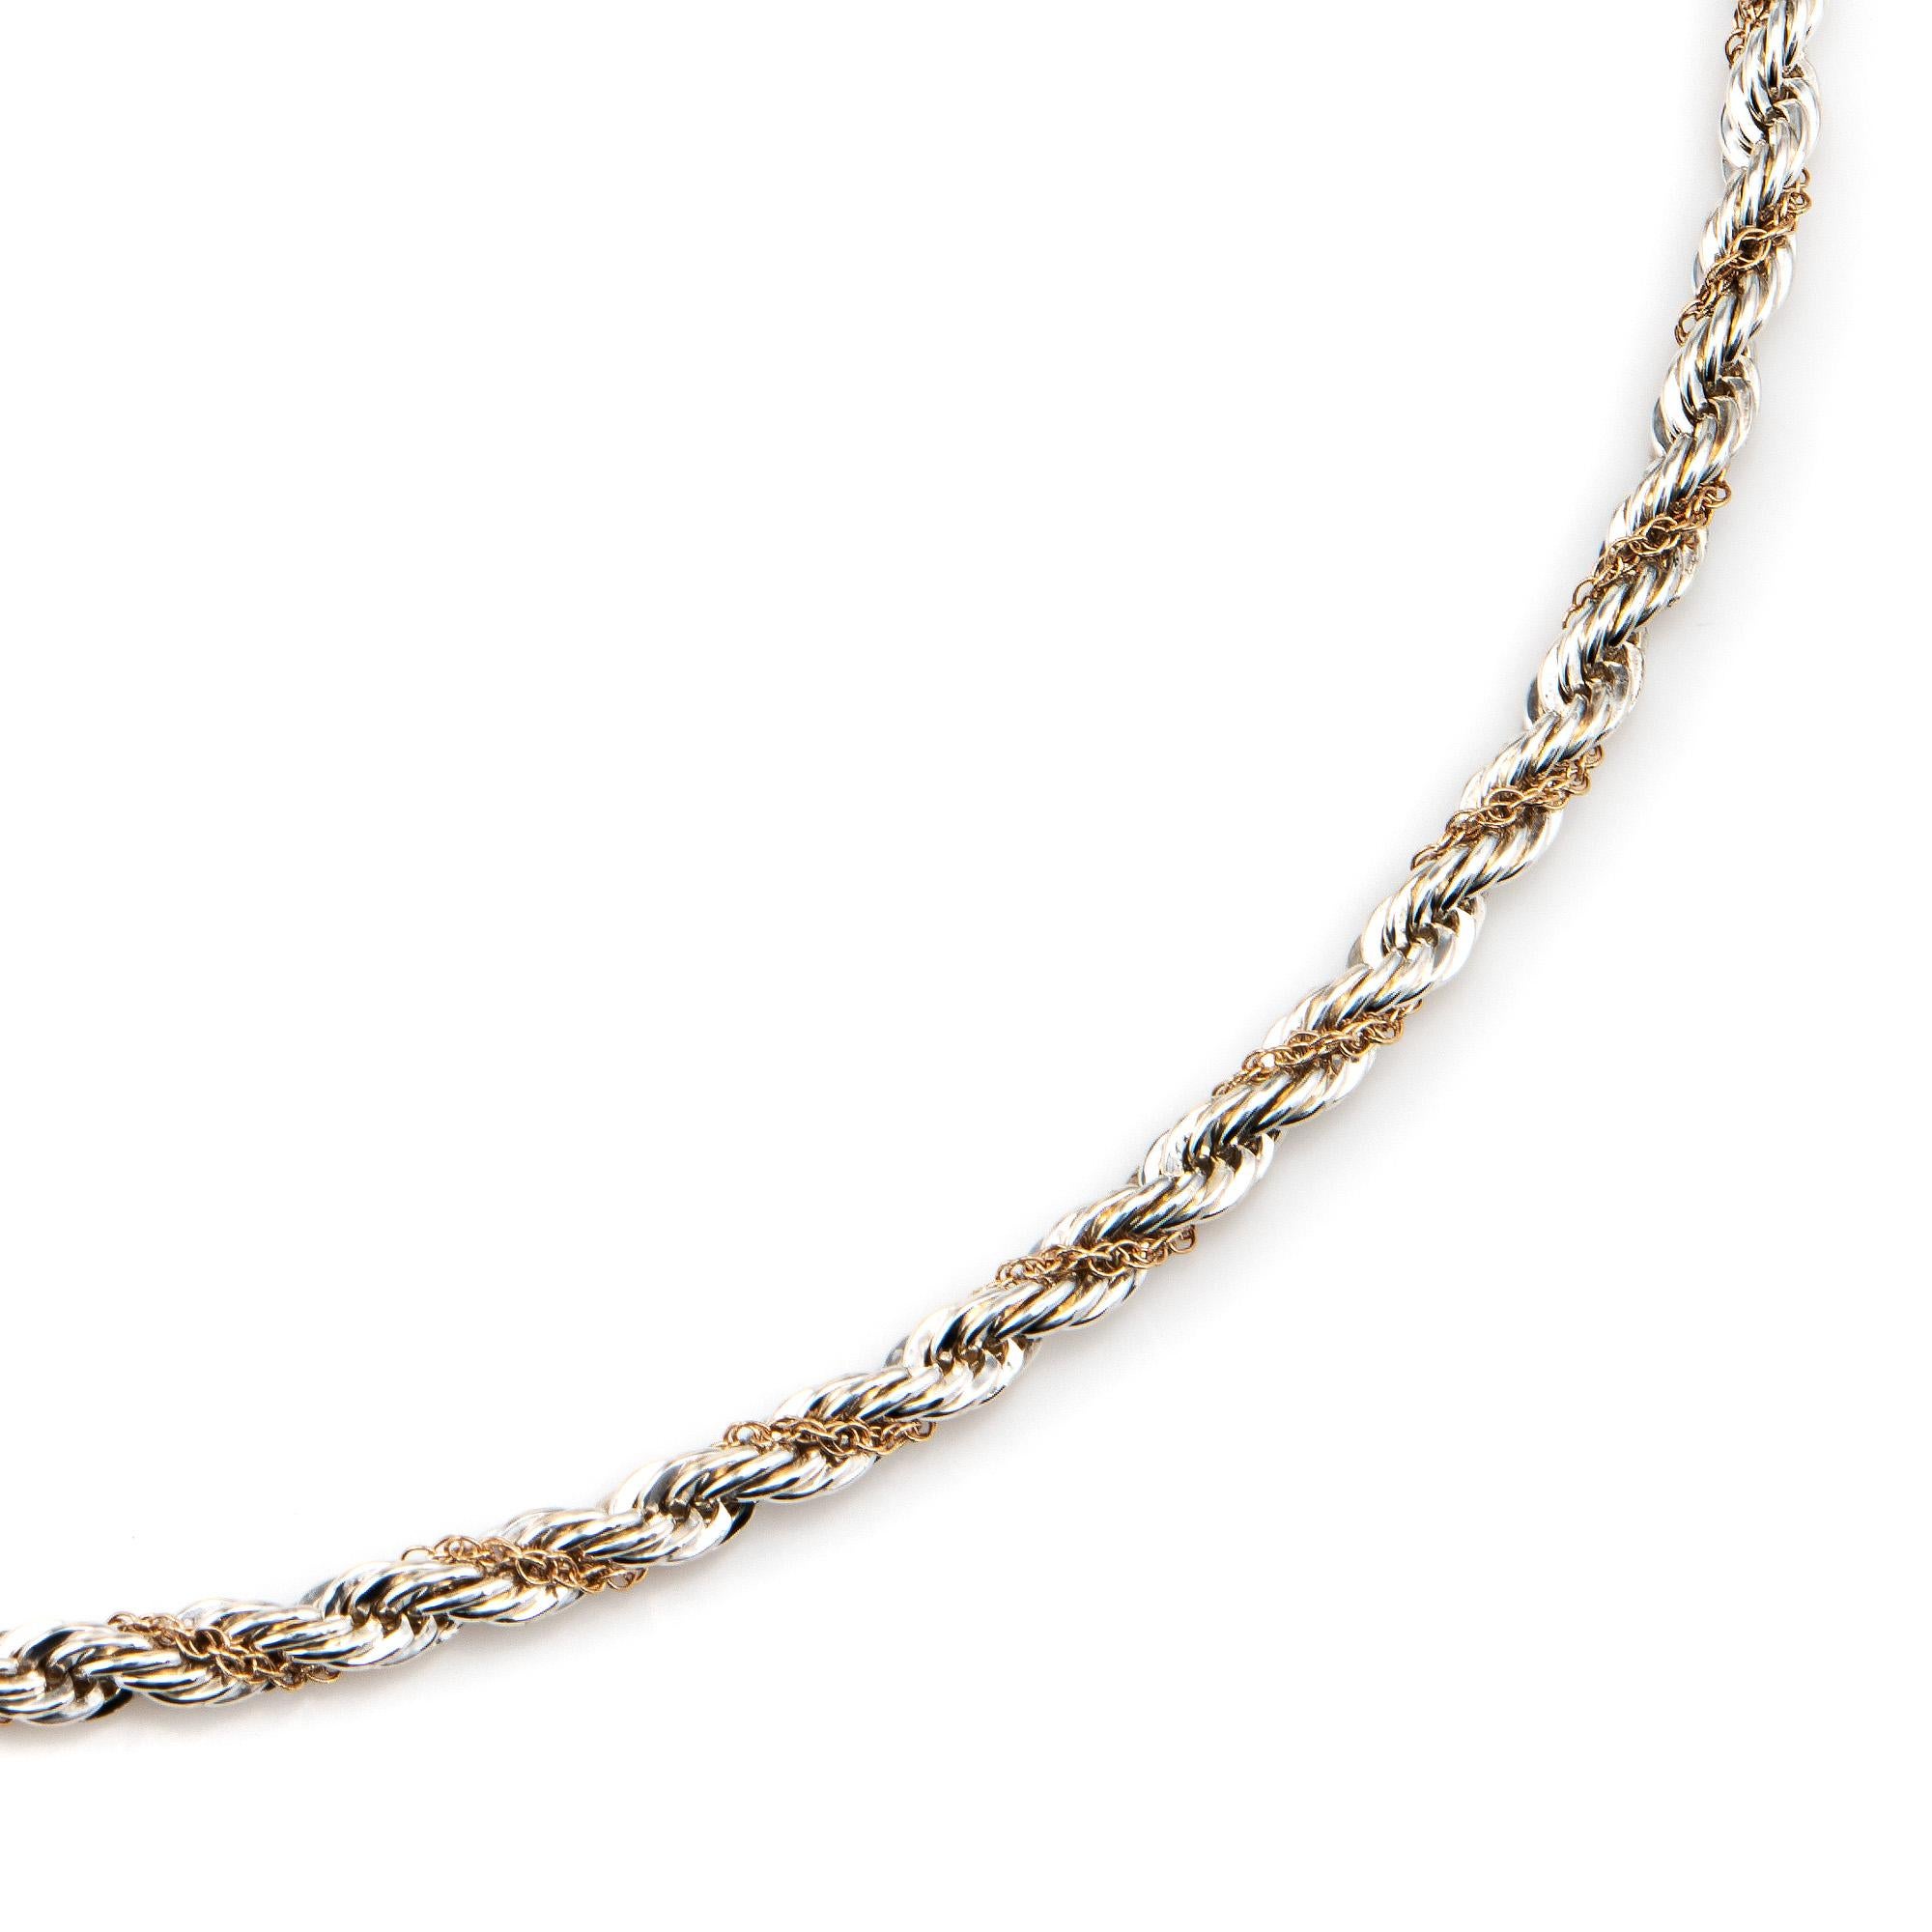 Élégant et finement détaillé collier de corde vintage Tiffany & Co en argent sterling et or jaune 14k.  

Le collier est une pièce retirée et n'est plus fabriqué par Tiffany & Co. Le long collier de corde (24 pouces) a une sensation substantielle et